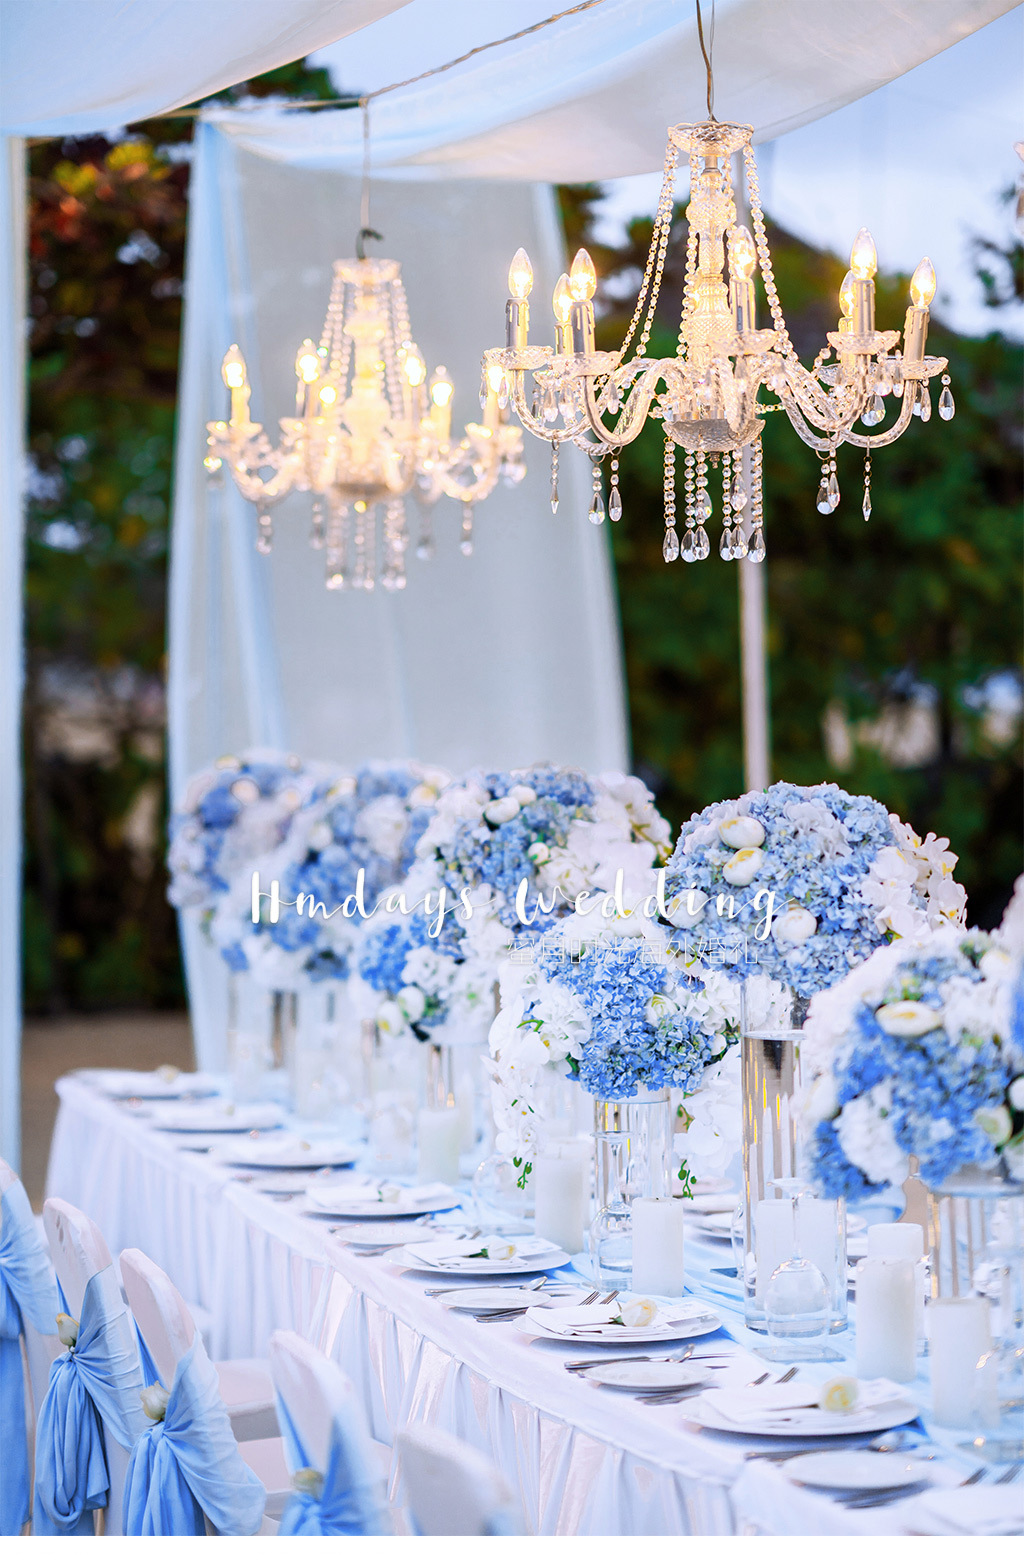 海外婚礼巴厘岛高端婚礼布置|水晶蓝色|crystal blue|海外婚礼定制中高端布置案例|巴厘岛婚礼布置定制案例